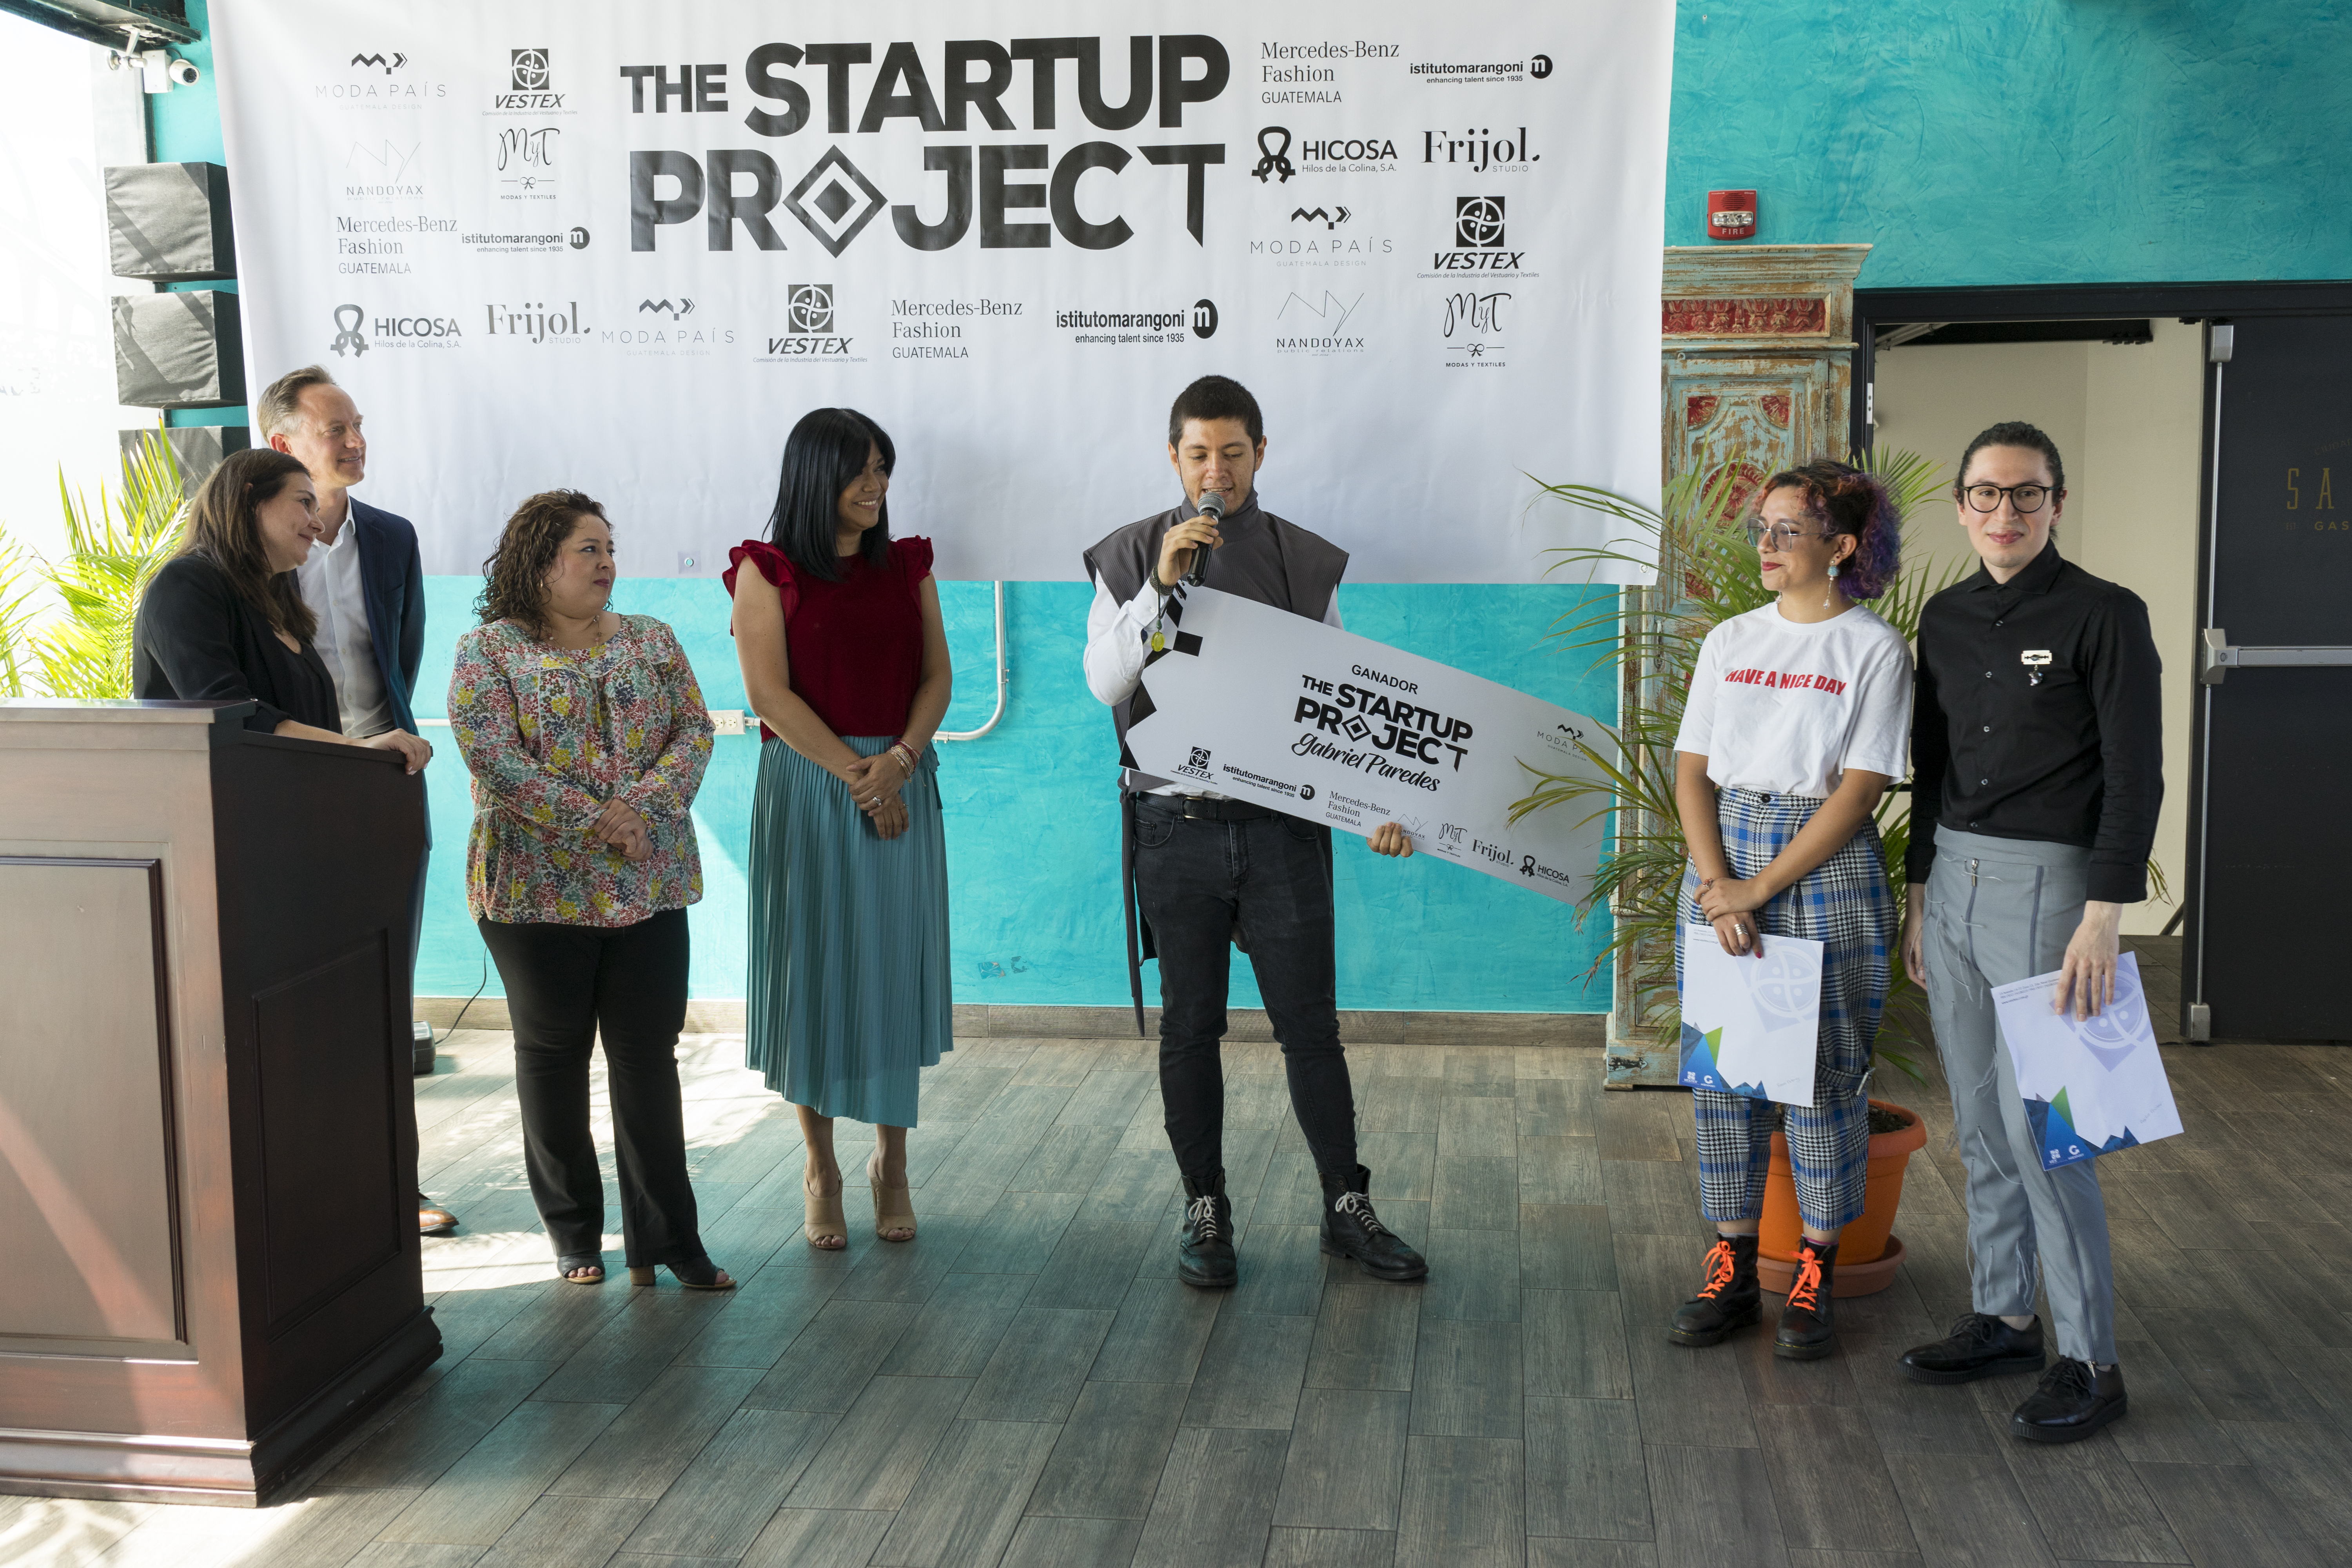 Gabriel Paredes con su marca HRSTK fue el ganador del Startup Project que organiza Moda País. (Foto Prensa Libre: Cortesía)